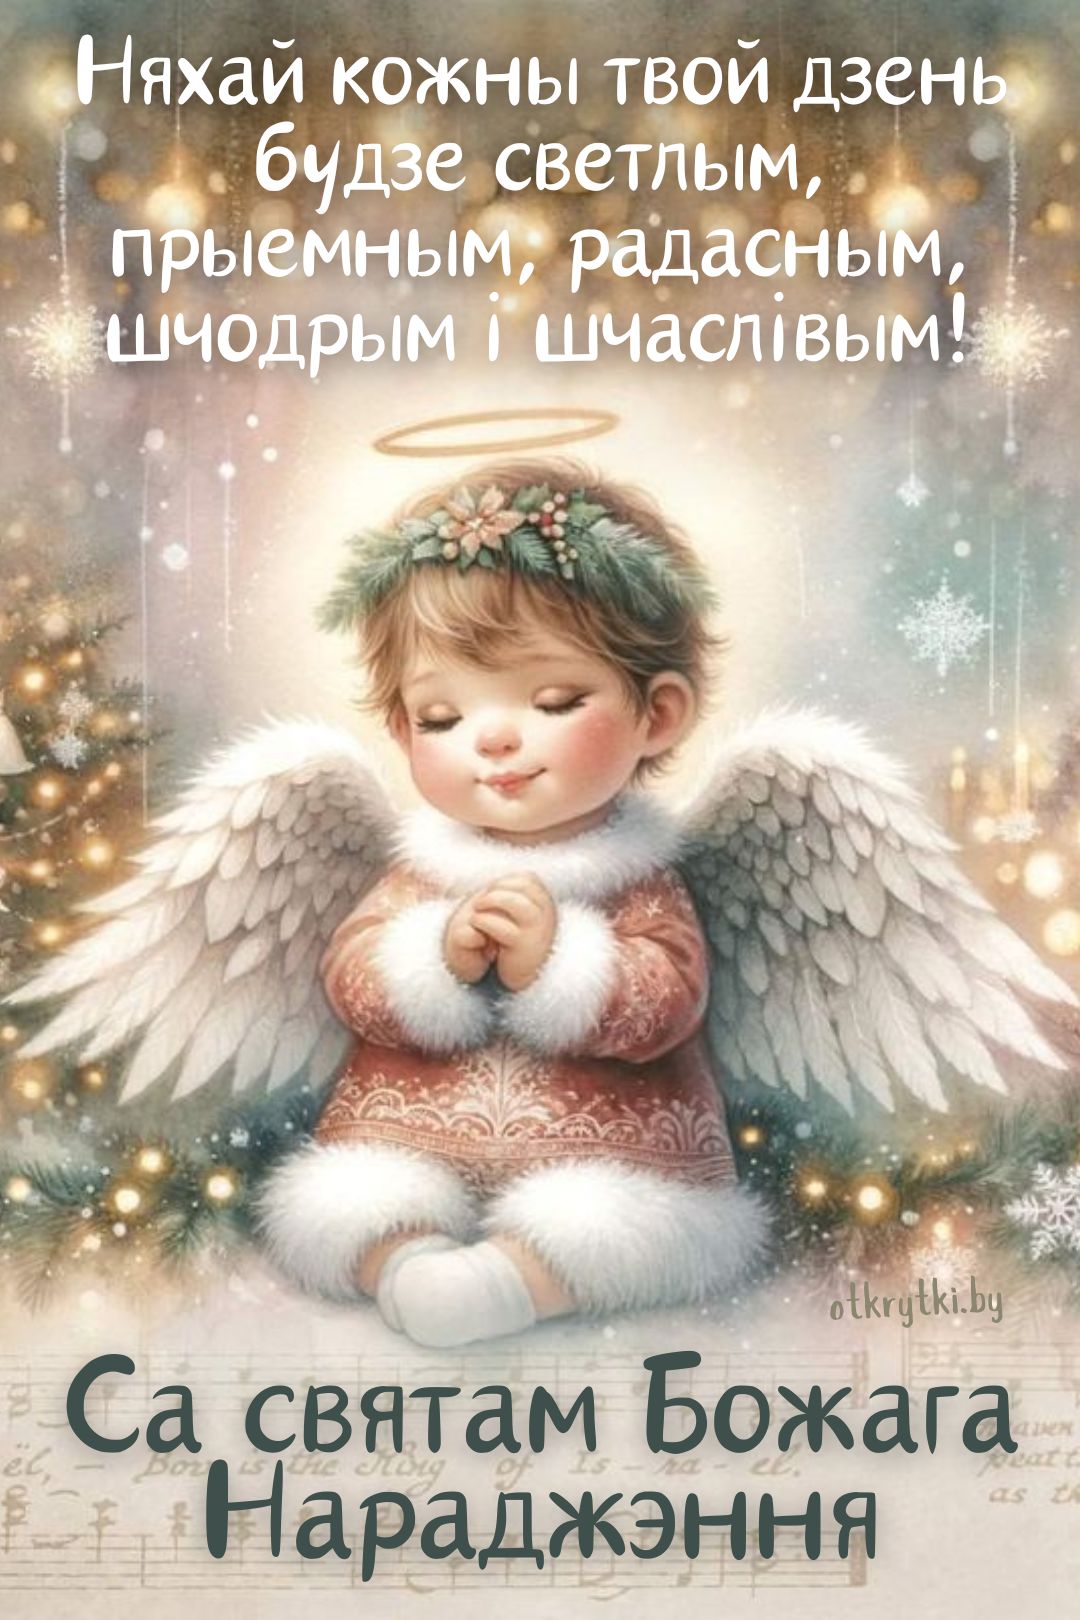 БЕЛОРУССКИЕ открытки с Рождеством Христовым на белорусском языке